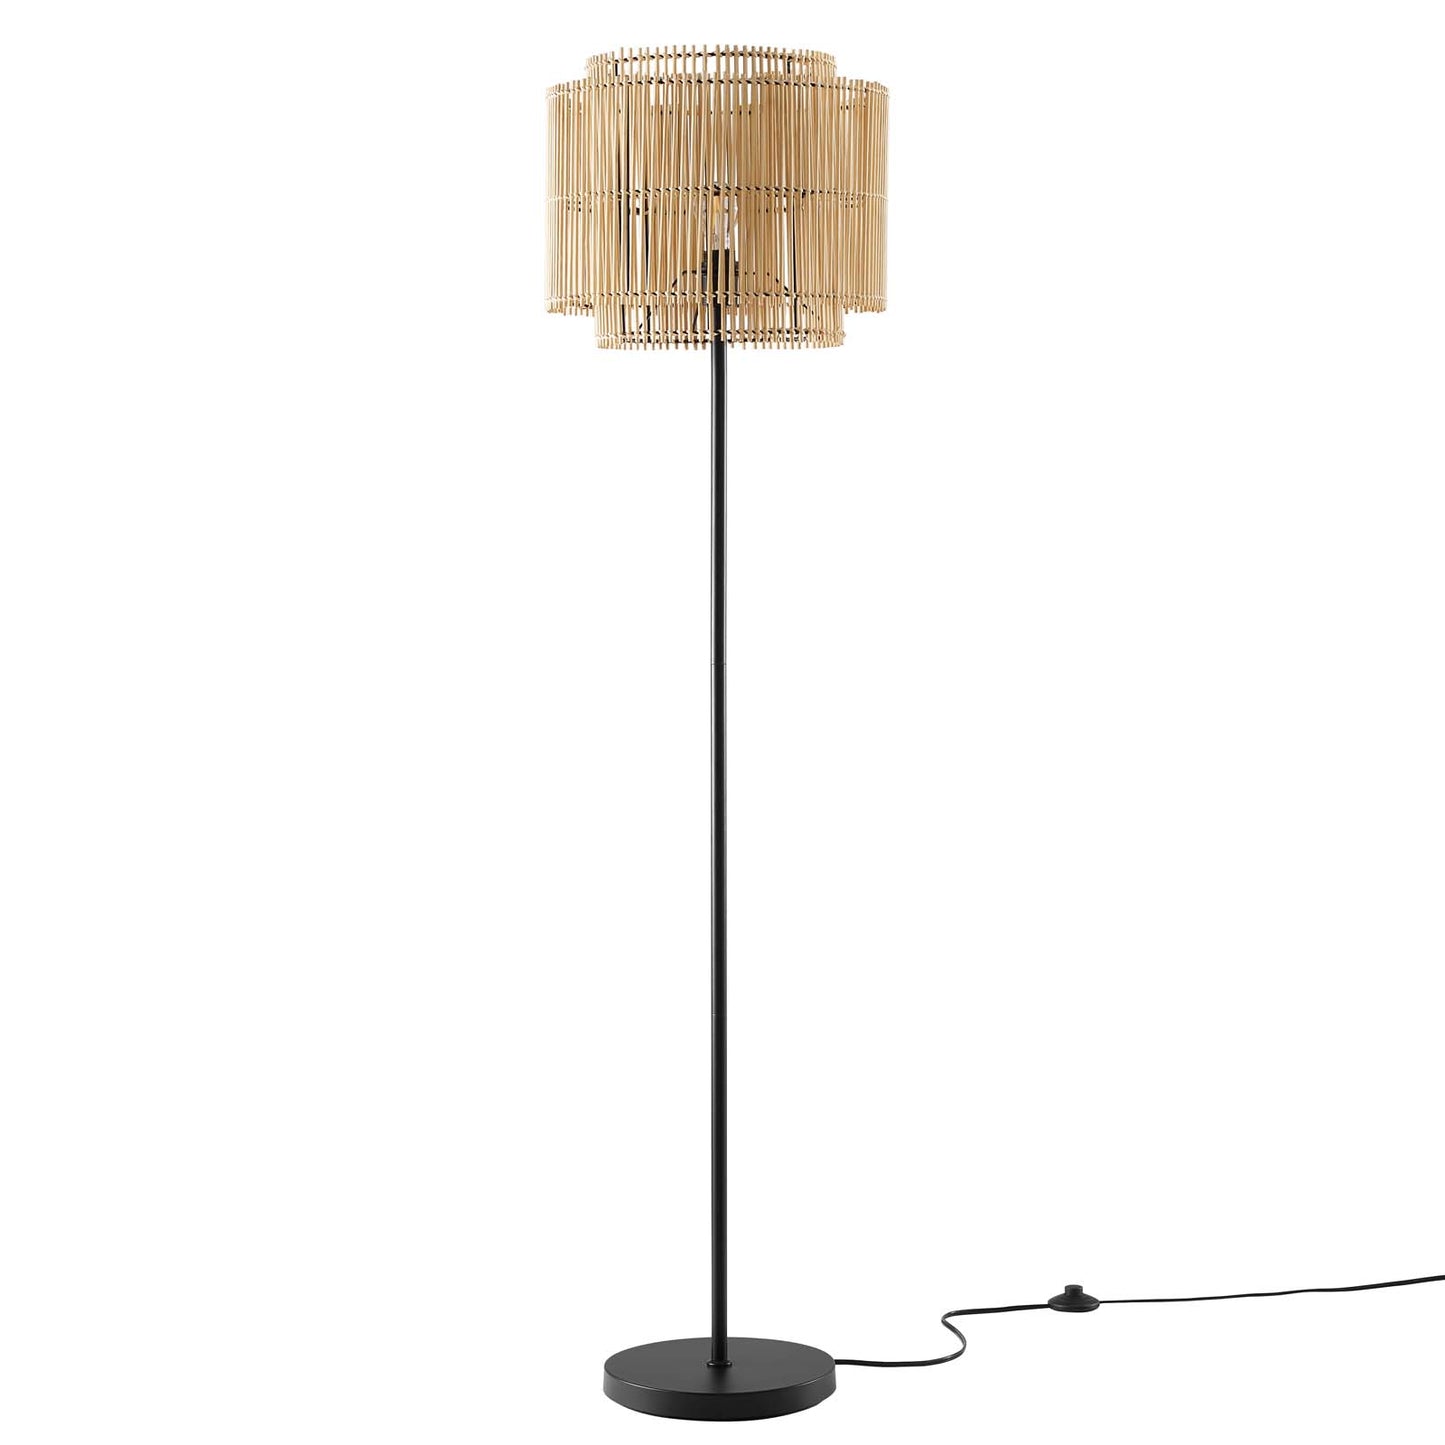 Nourish Bamboo Floor Lamp By Modway - EEI-5611 | Floor Lamps | Modishstore - 2